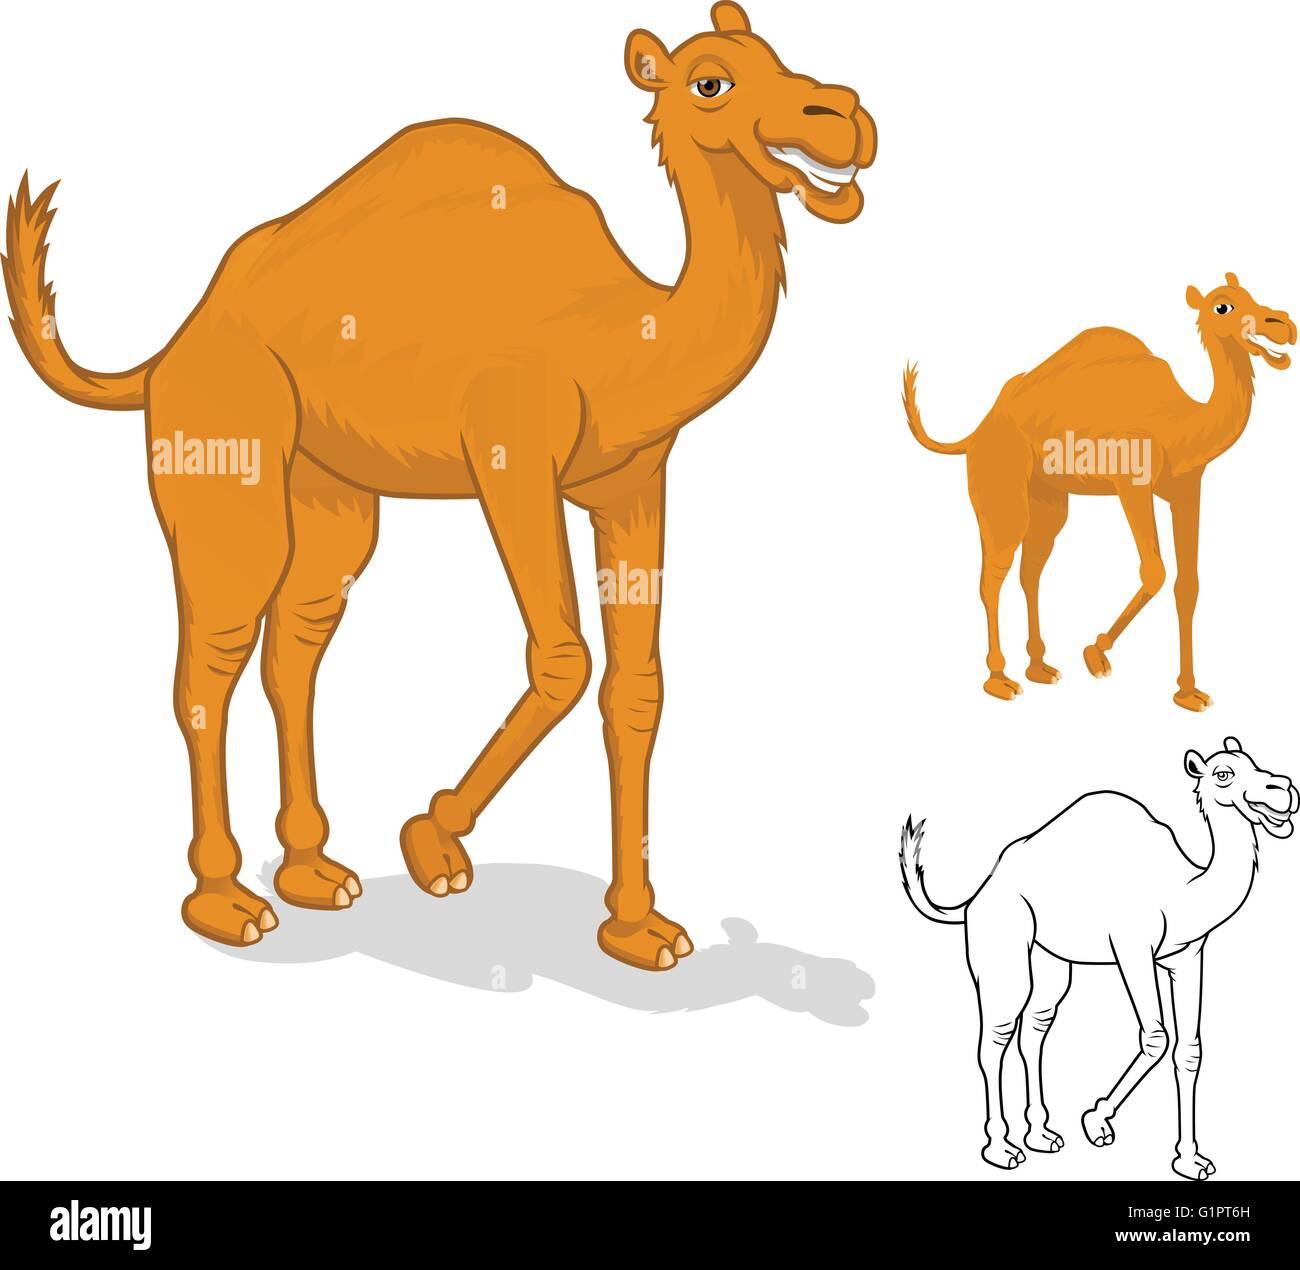 Alta qualità Camel personaggio dei fumetti illustrazione vettoriale Illustrazione Vettoriale